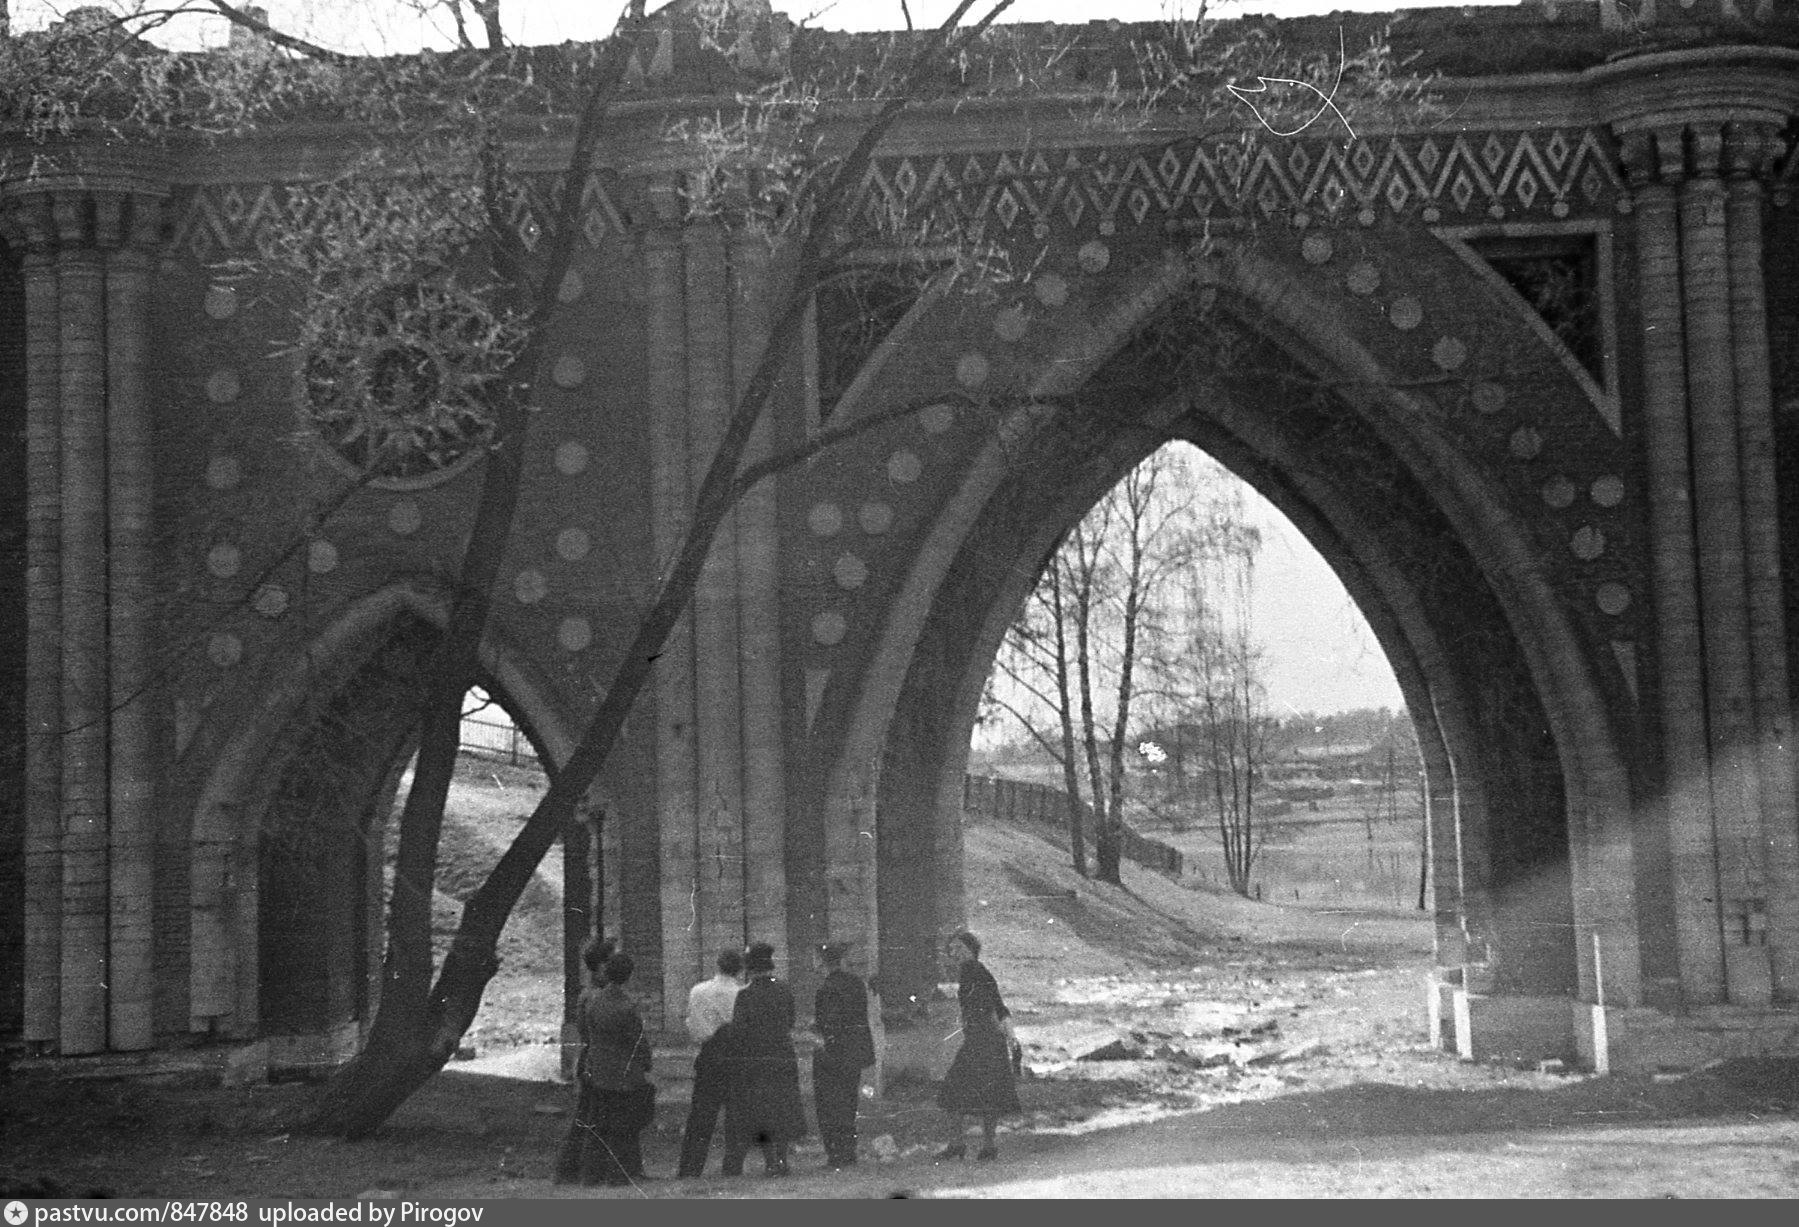 Ленино царицыно. Царицыно мост 1970. Большой мост через овраг Царицыно. Царицыно 1980.